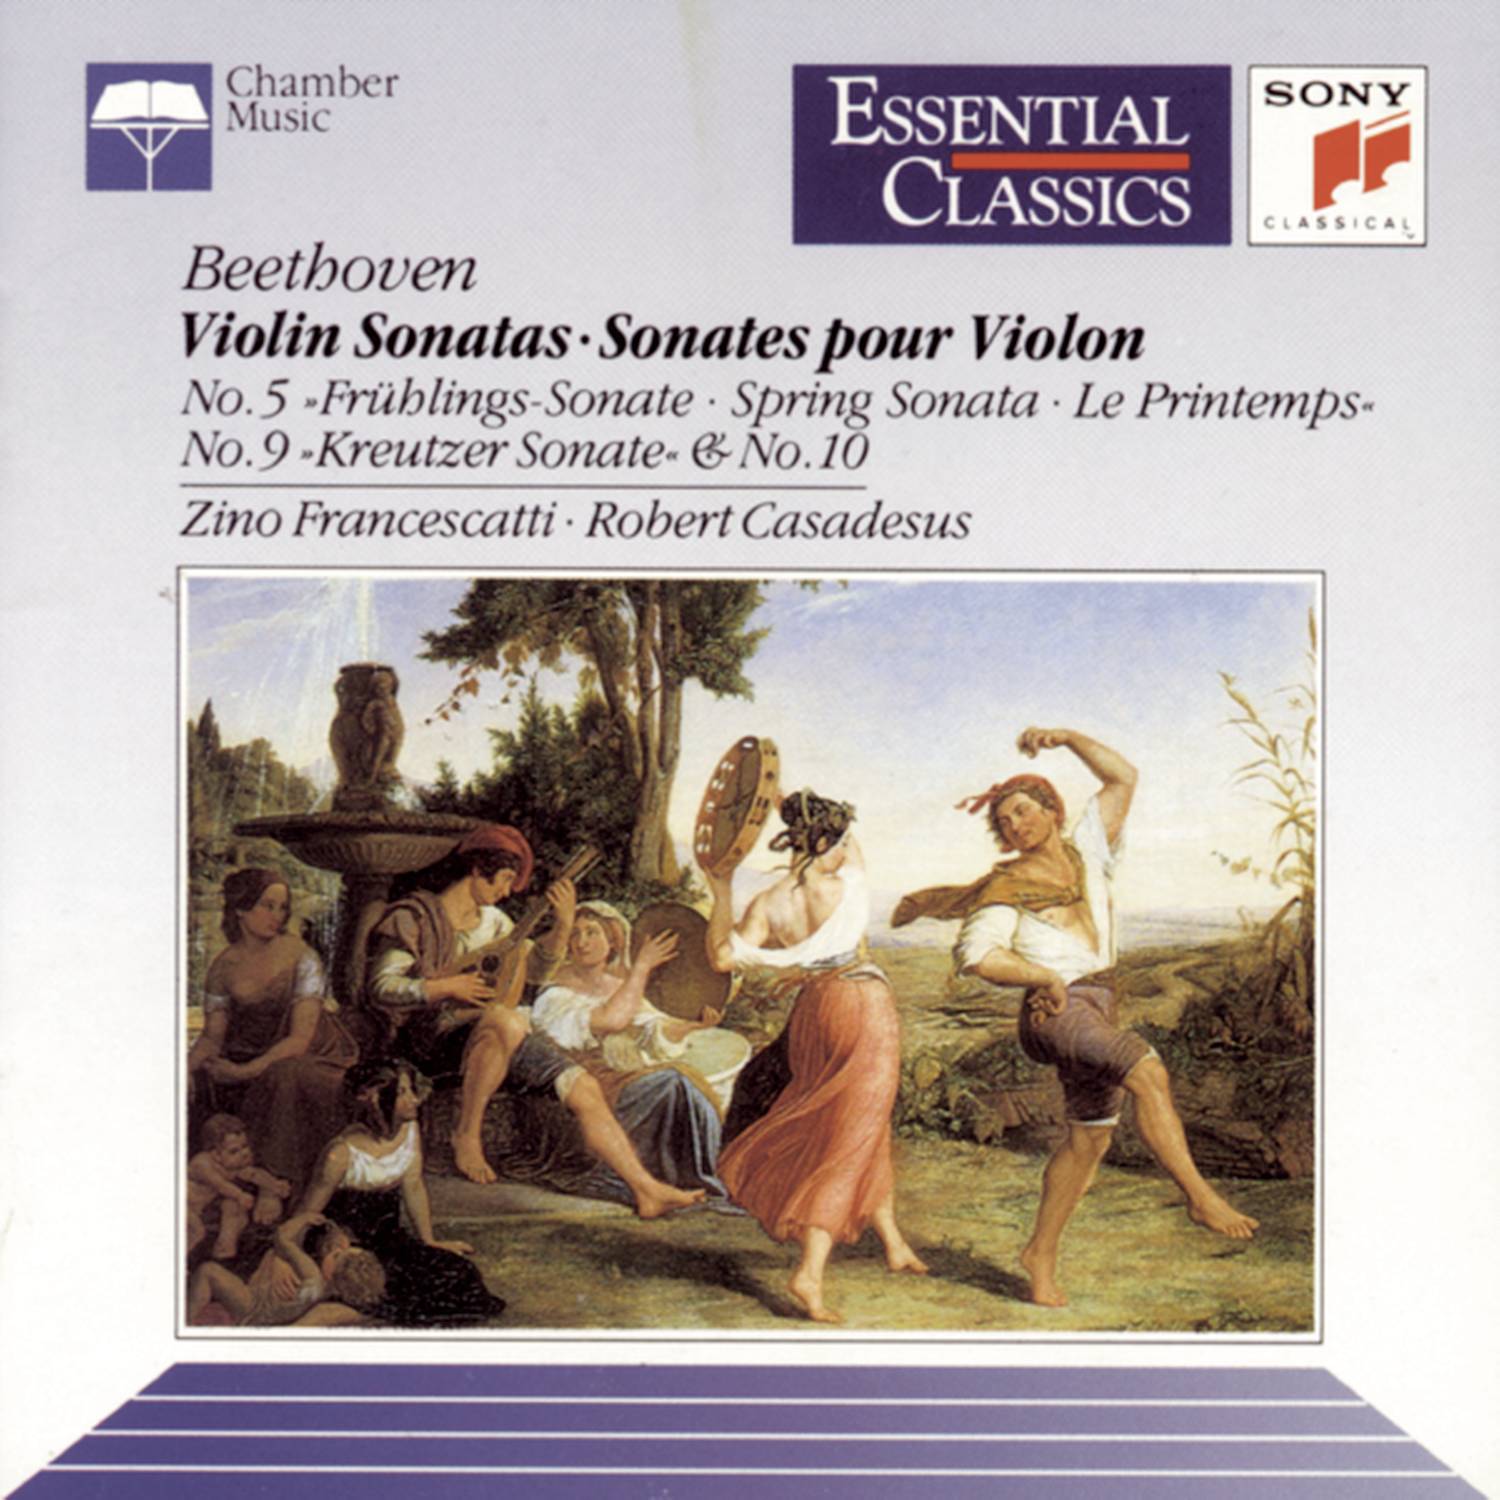 Sonata No. 10 in G Major for Violin and Piano, Op. 96: II.  Adagio espressivo